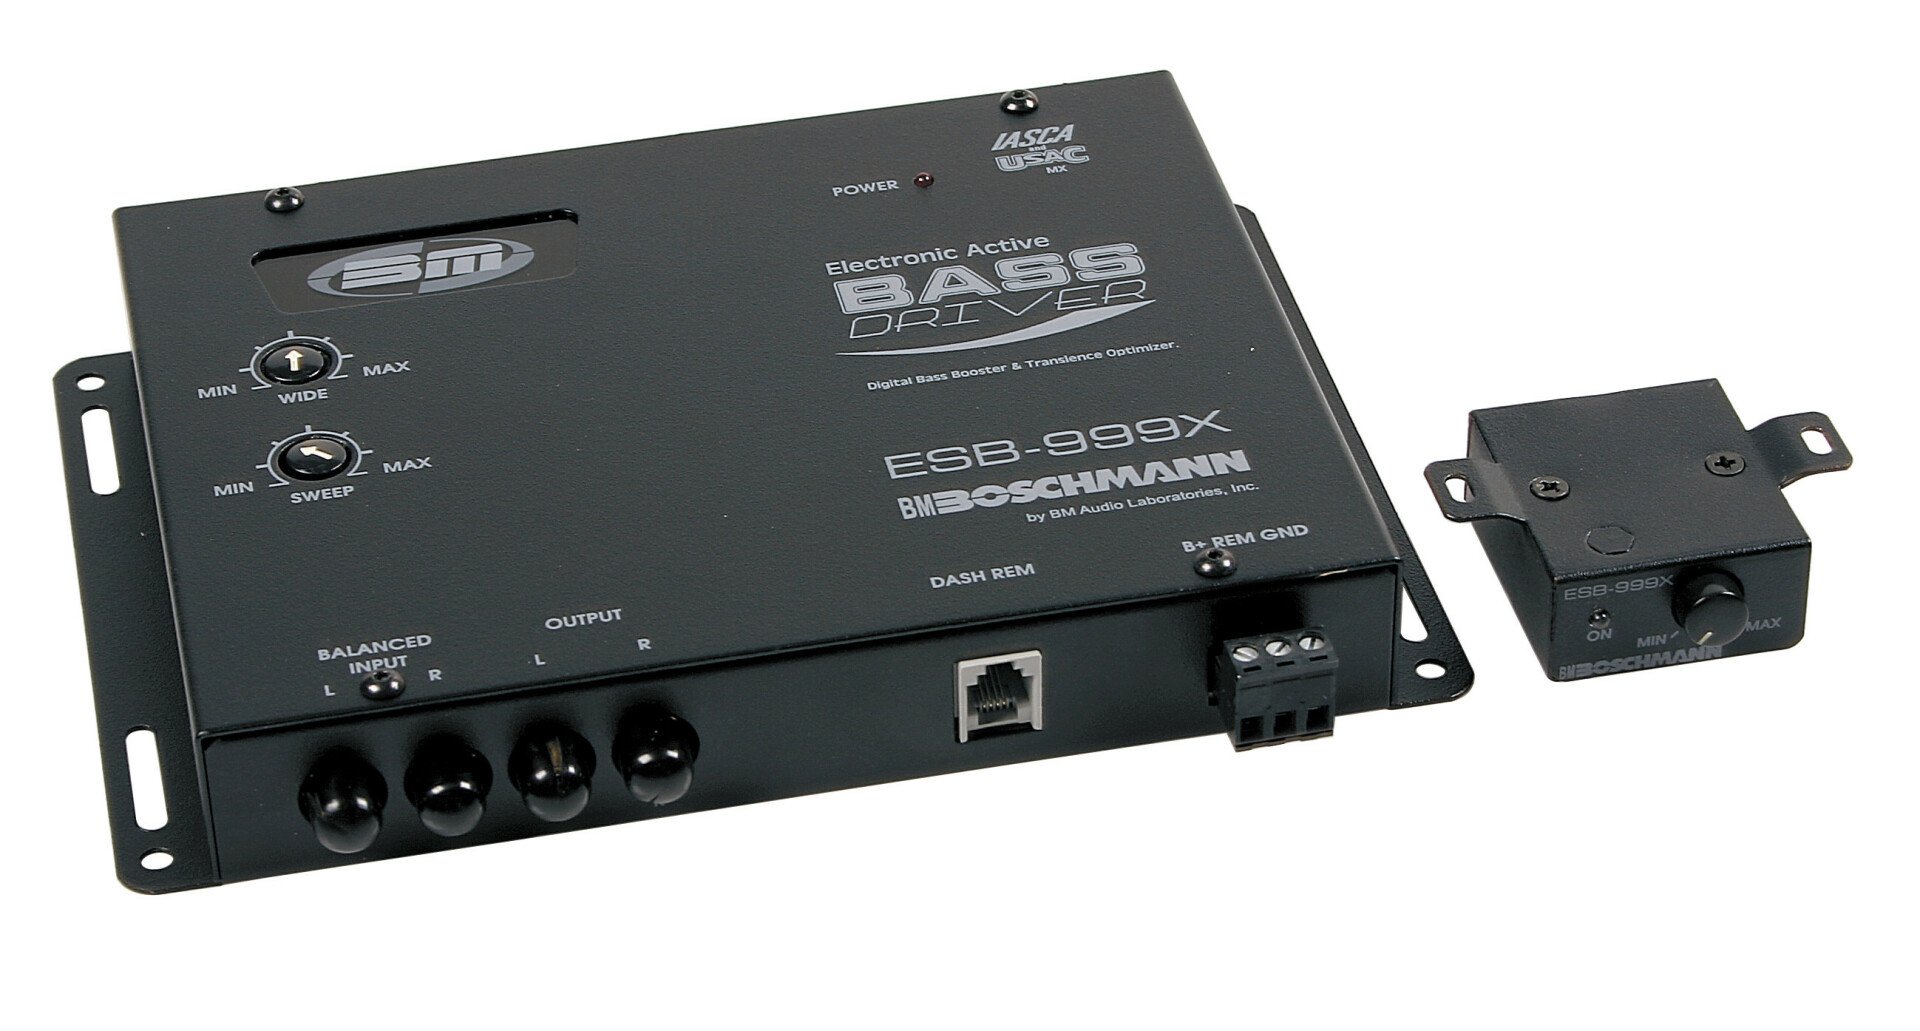 ESB-999X - Bass driver - Újra csomagolt termék thumb